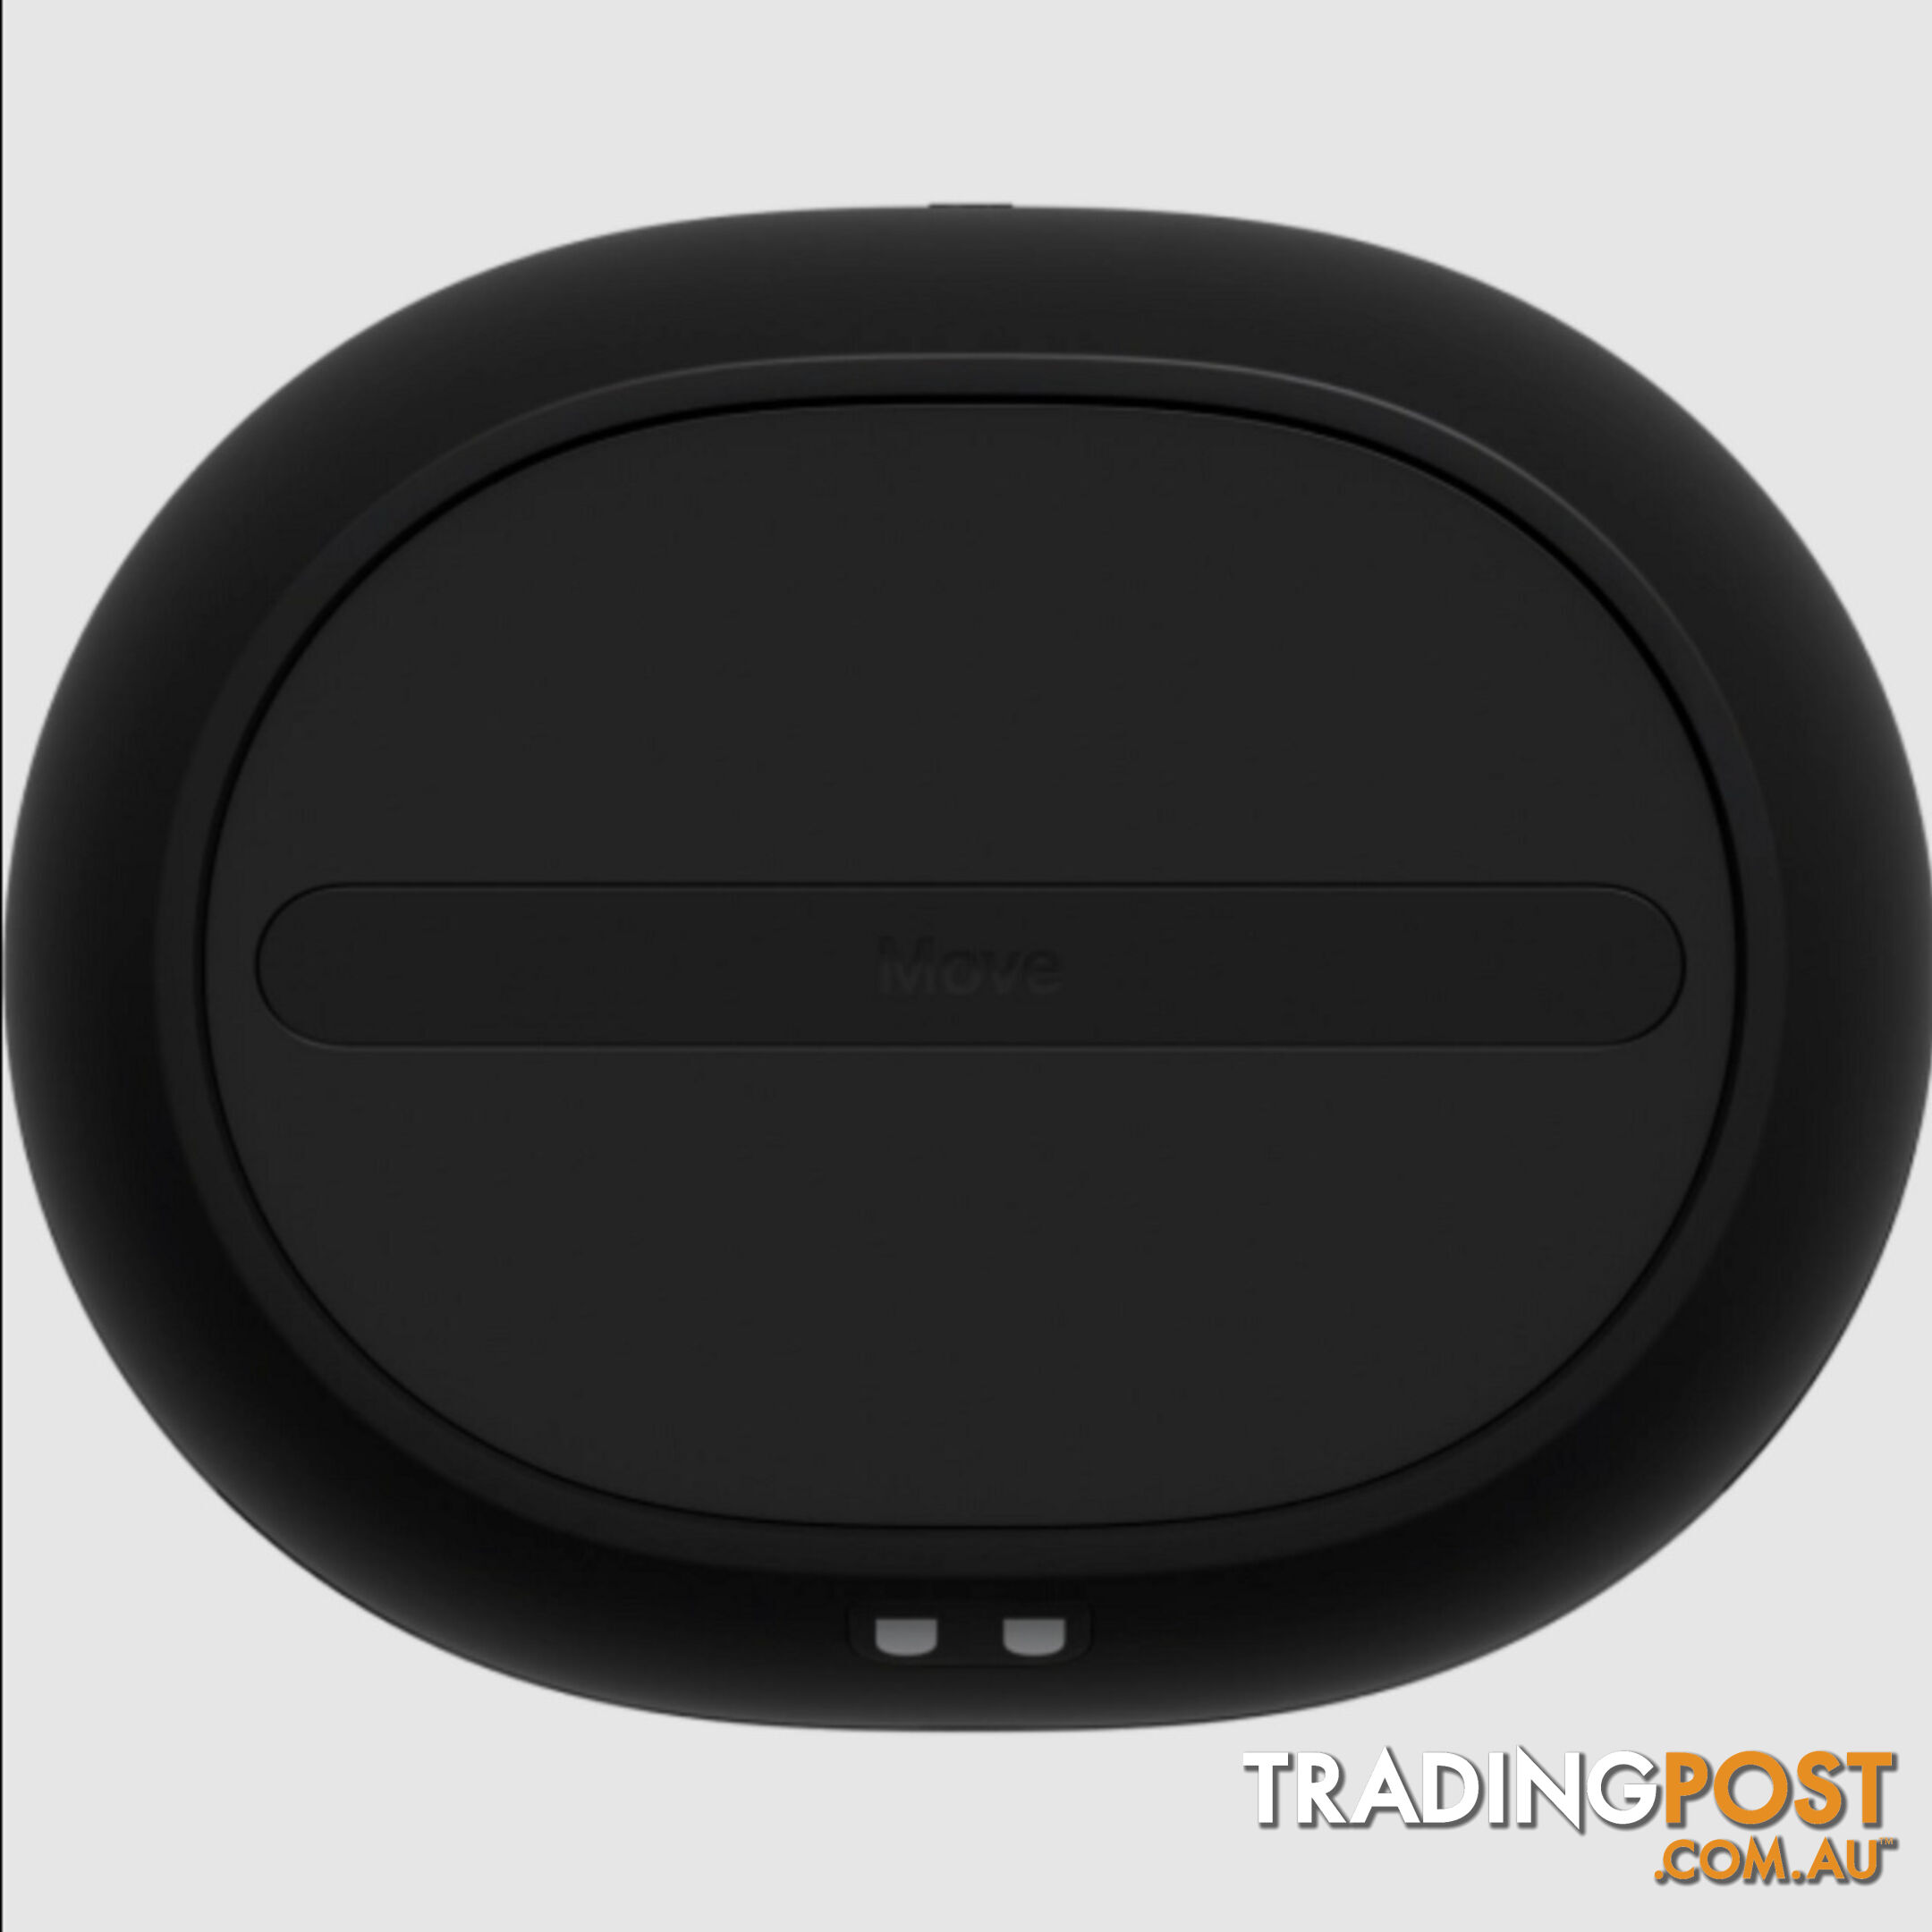 Sonos Move 2 Portable Smart Speaker